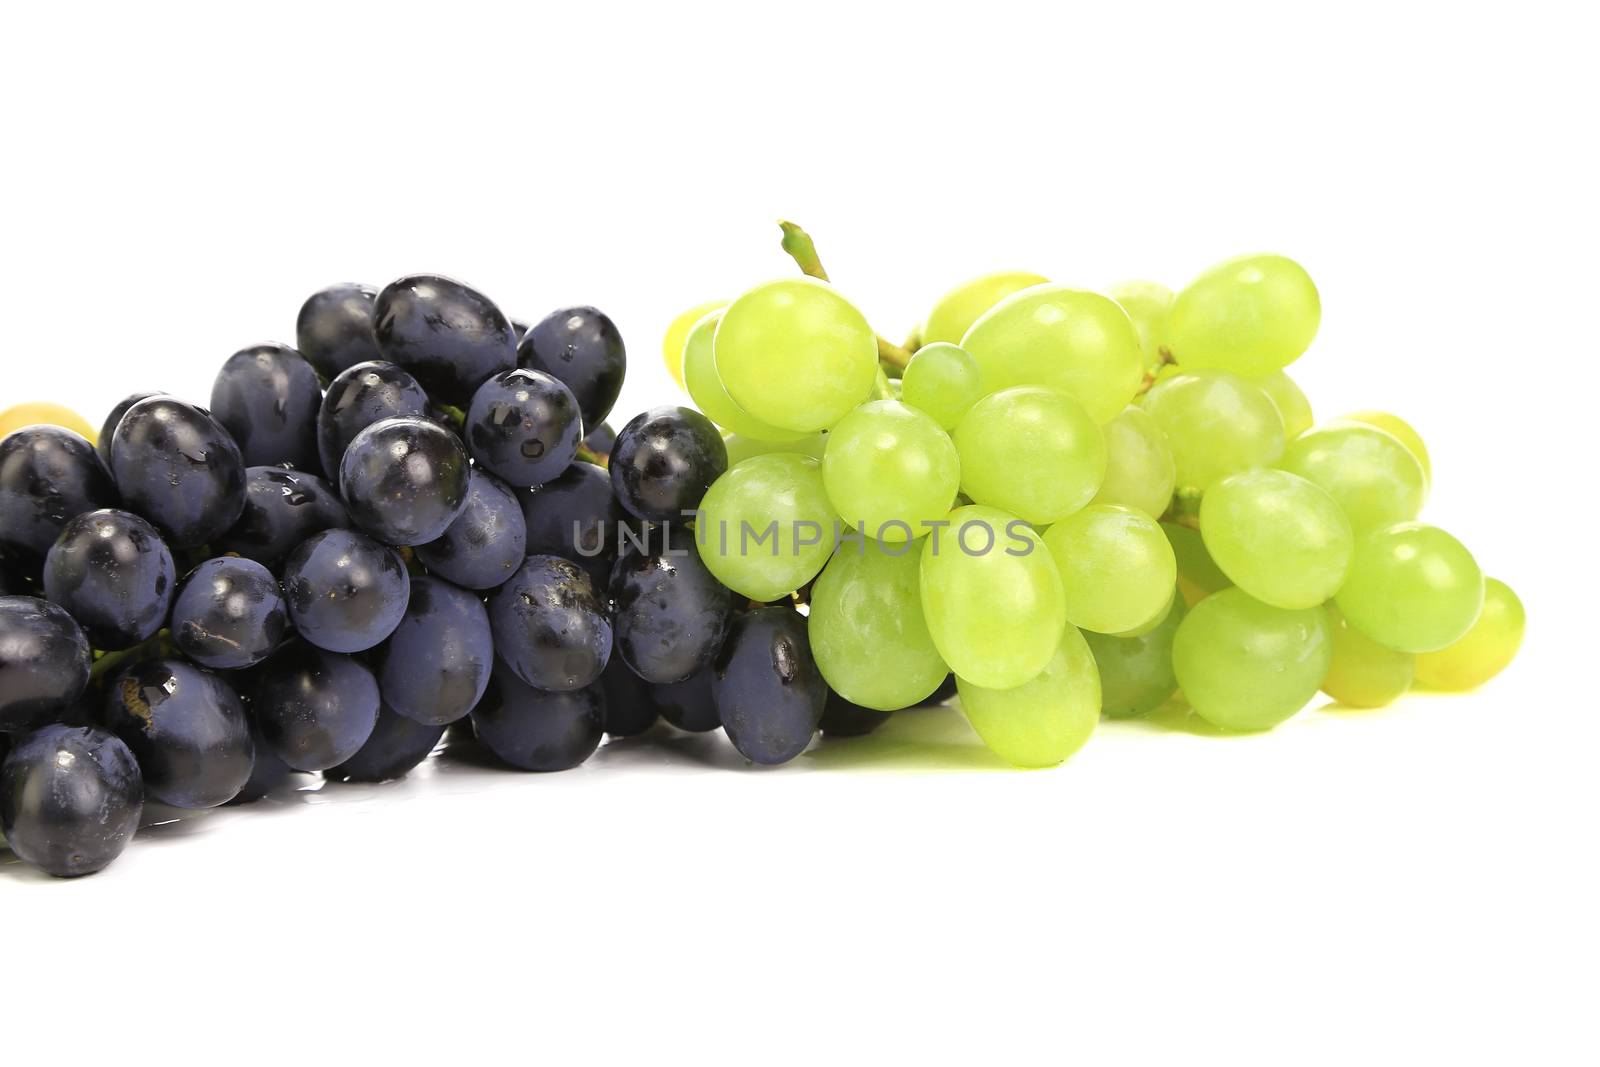 Ripe juicy grapes. by indigolotos